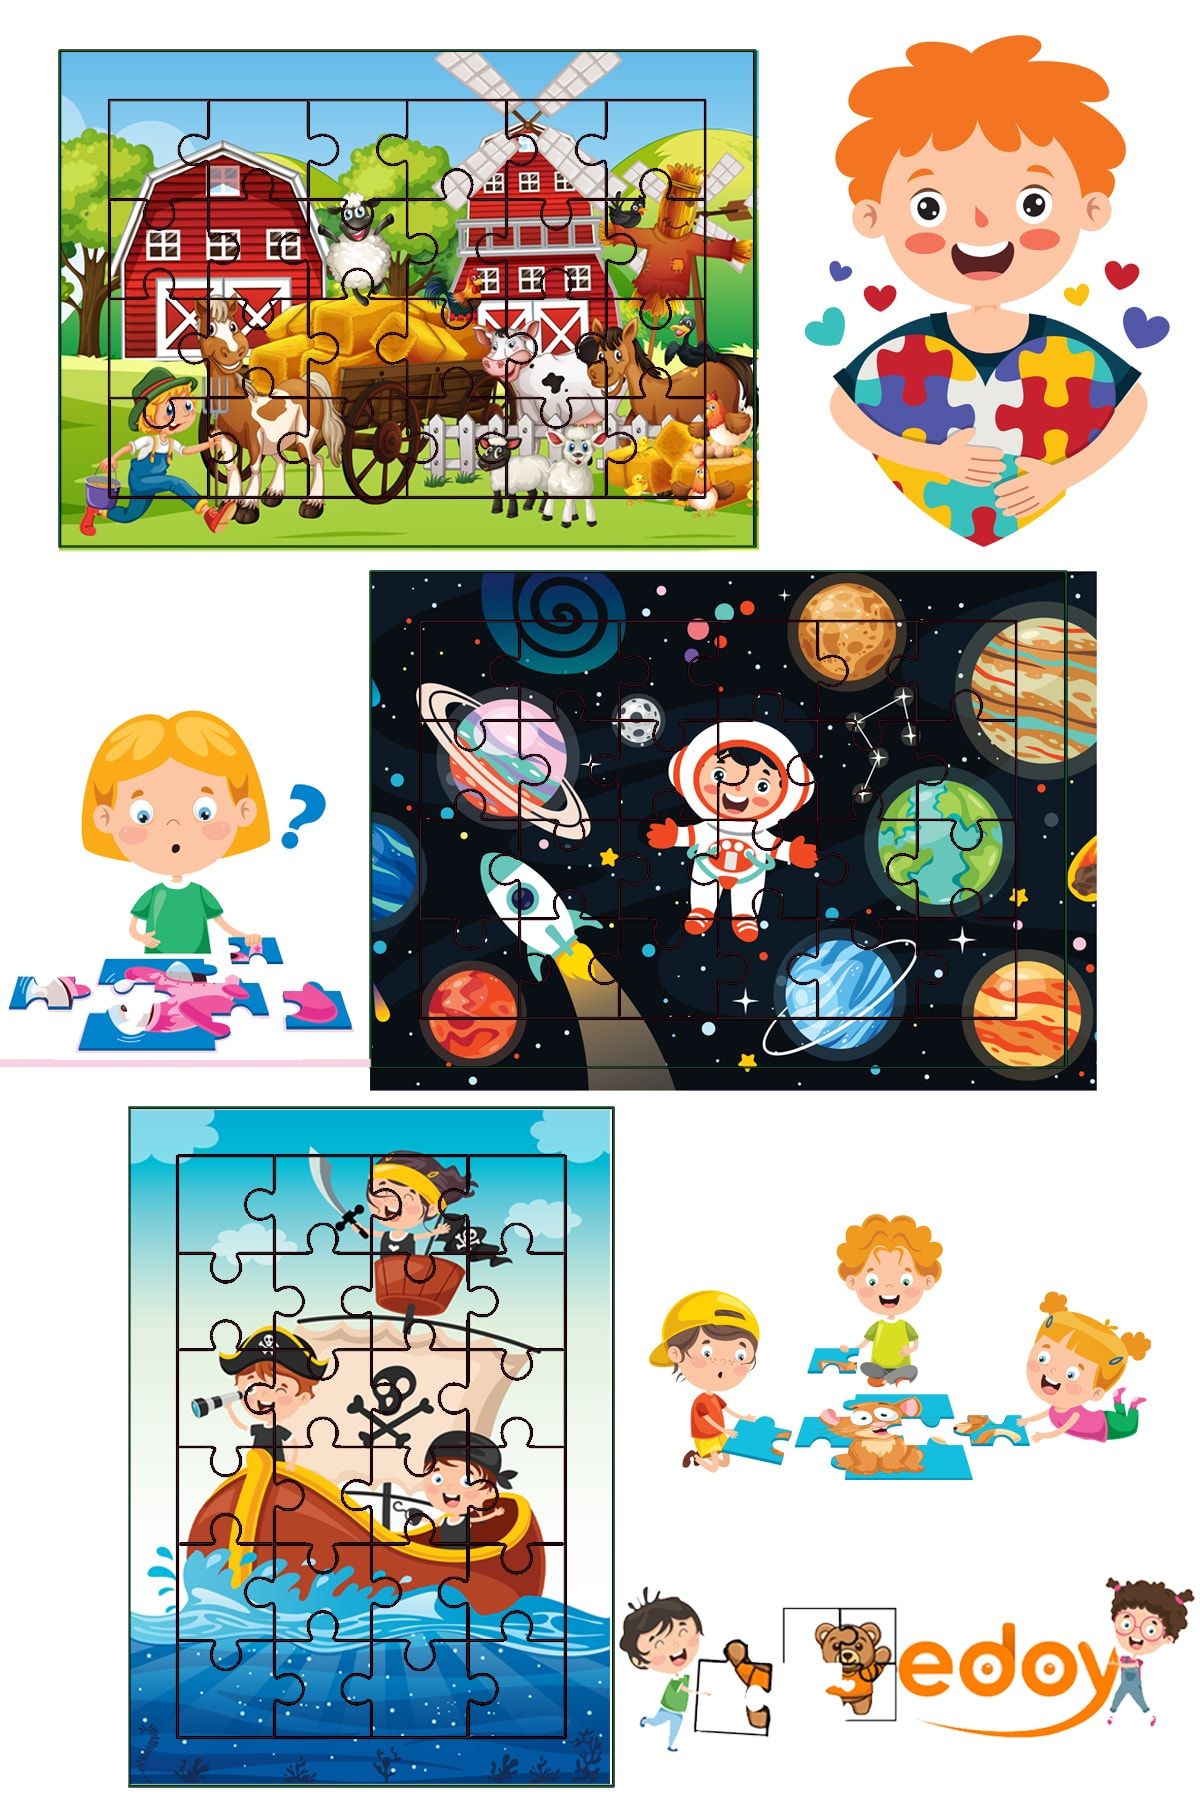 edoy Ahşap Çocuk Puzzle 24 Parça 3lü Set 2-4 Yaş Çocuklar Için Özel Tasarlanmıştır Model1 3lü Puzzle Seti